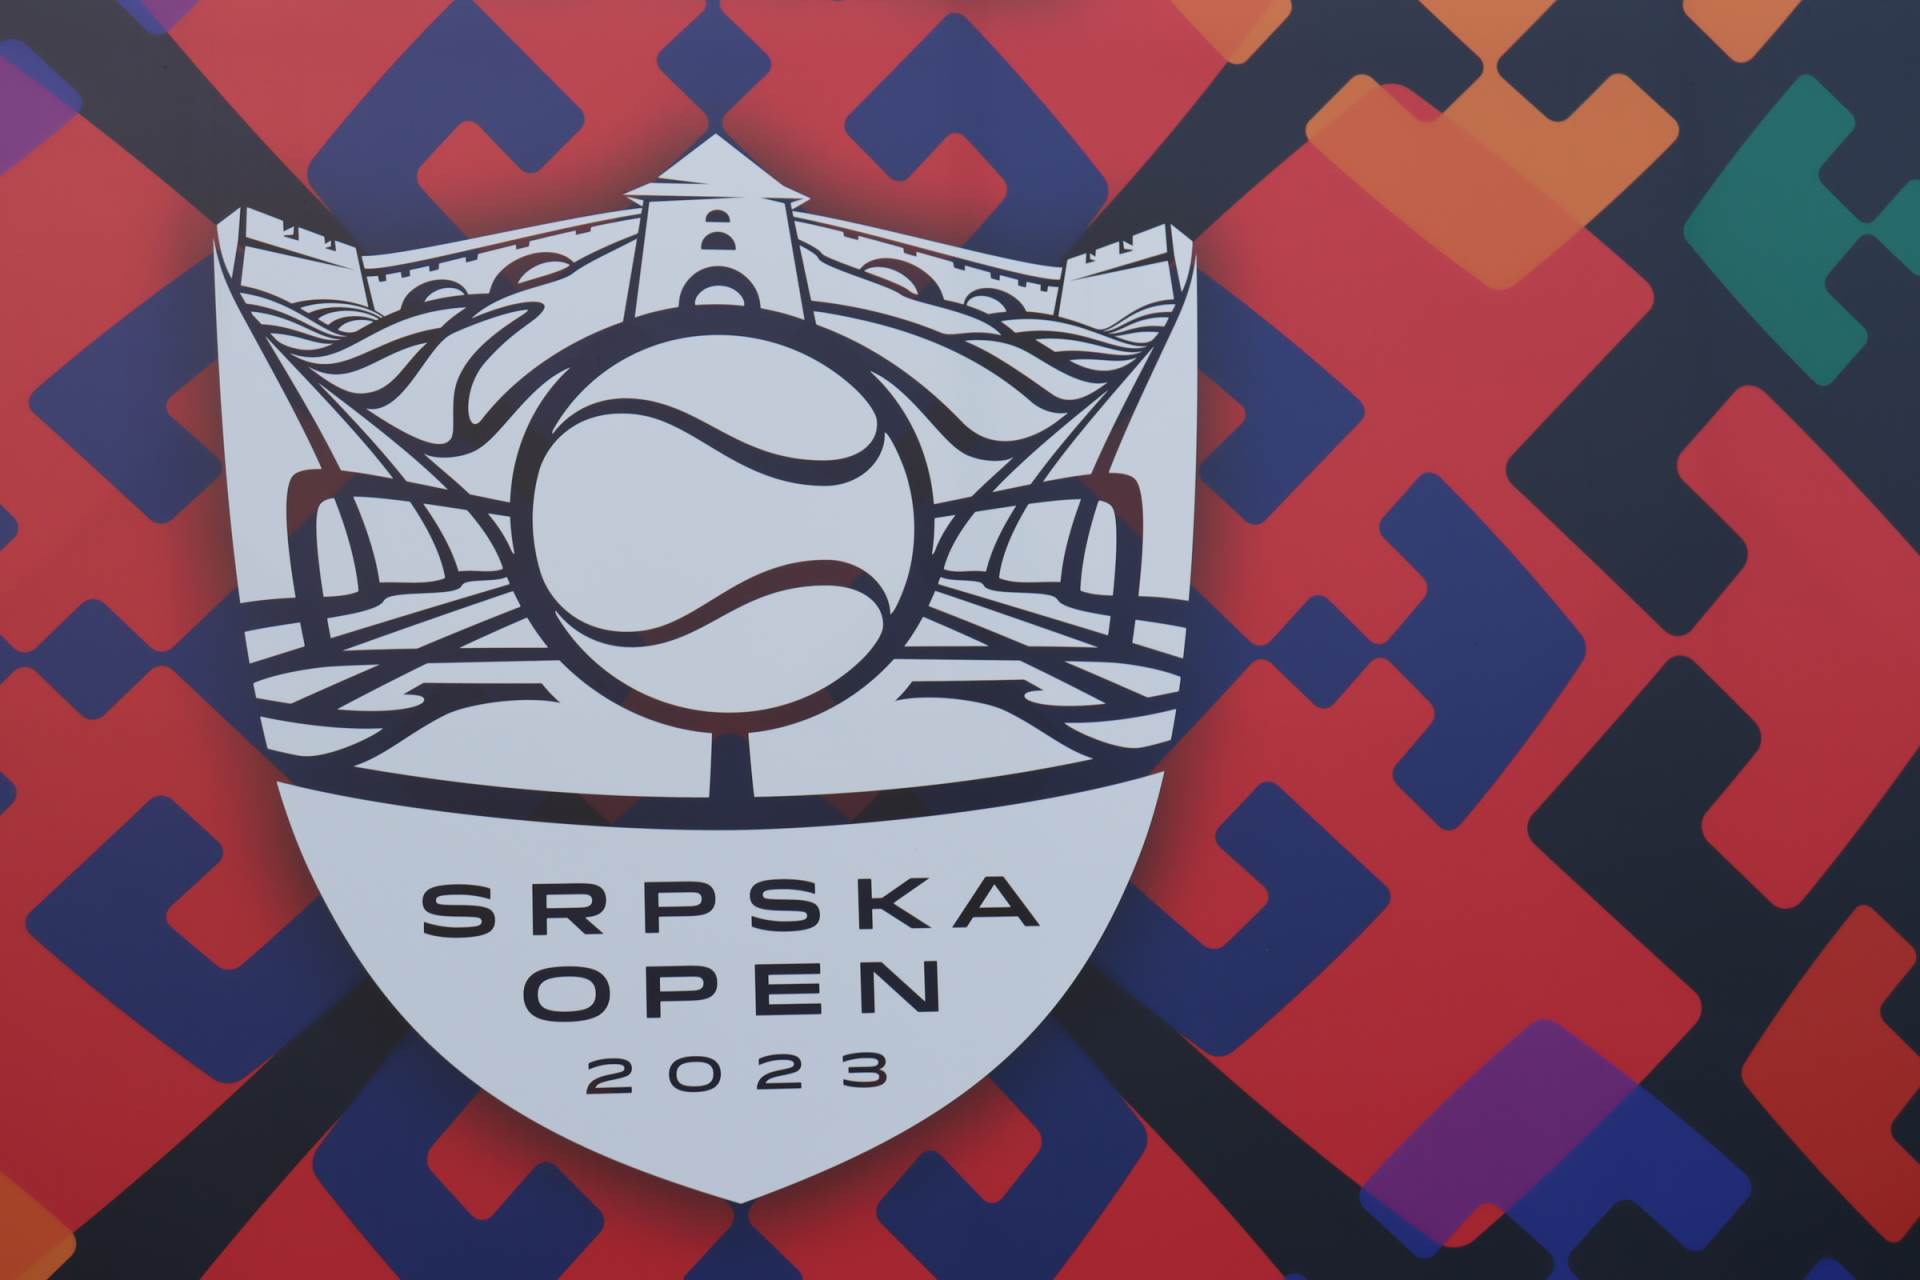  Vremenska prognoza za Srpska open 